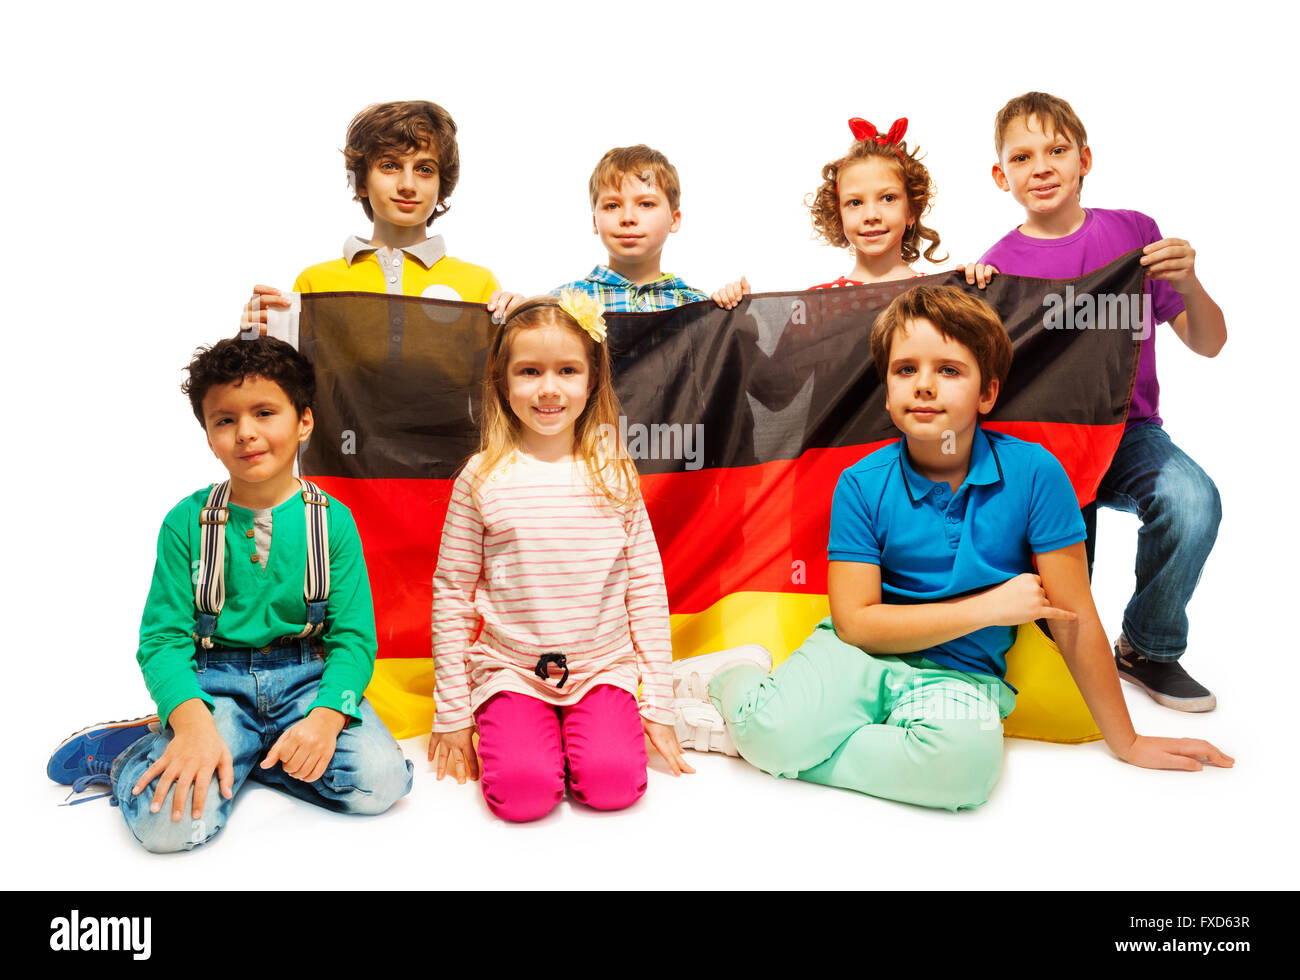 Grupo de siete niños sentados con la bandera alemana Foto de stock